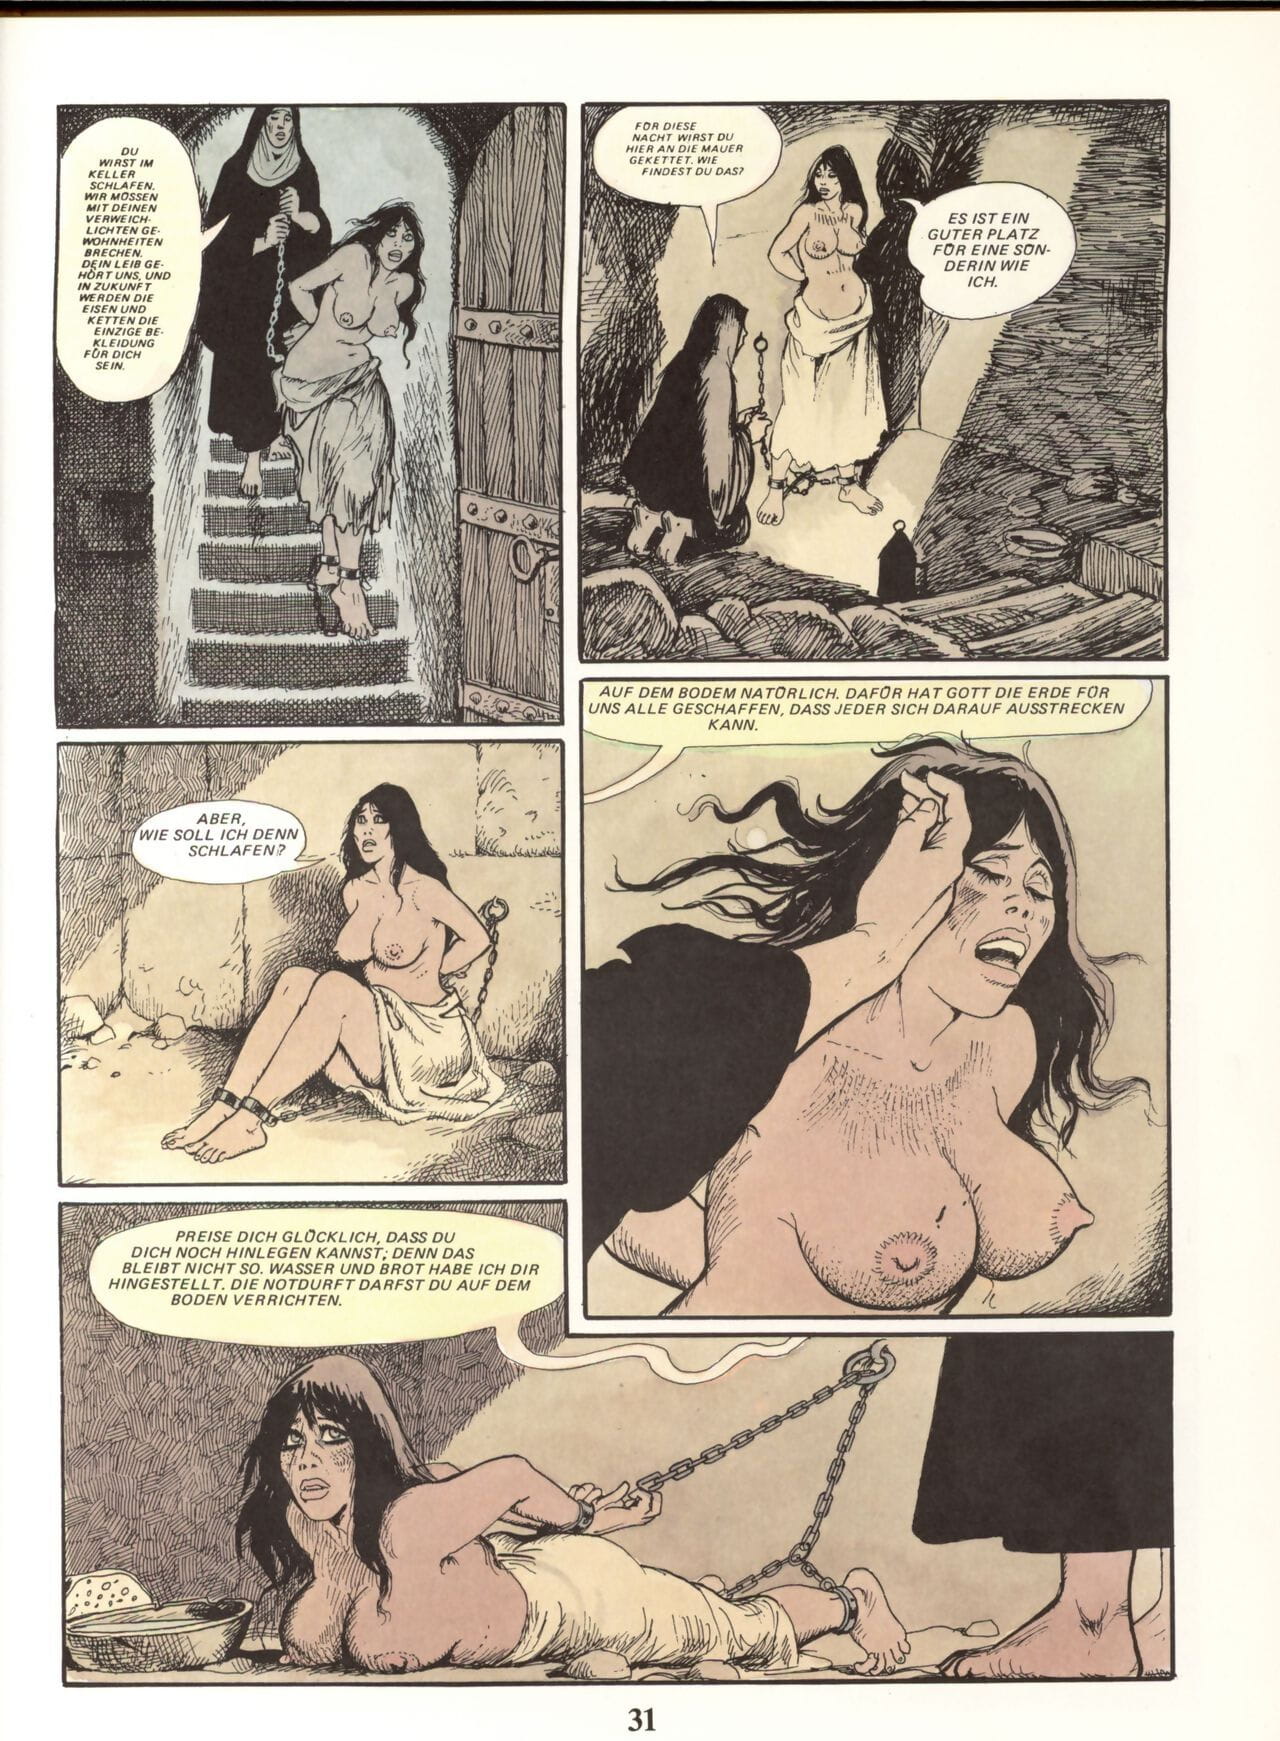 Marie-Gabrielle de Saint-Eutrope #02 - part 2 page 1